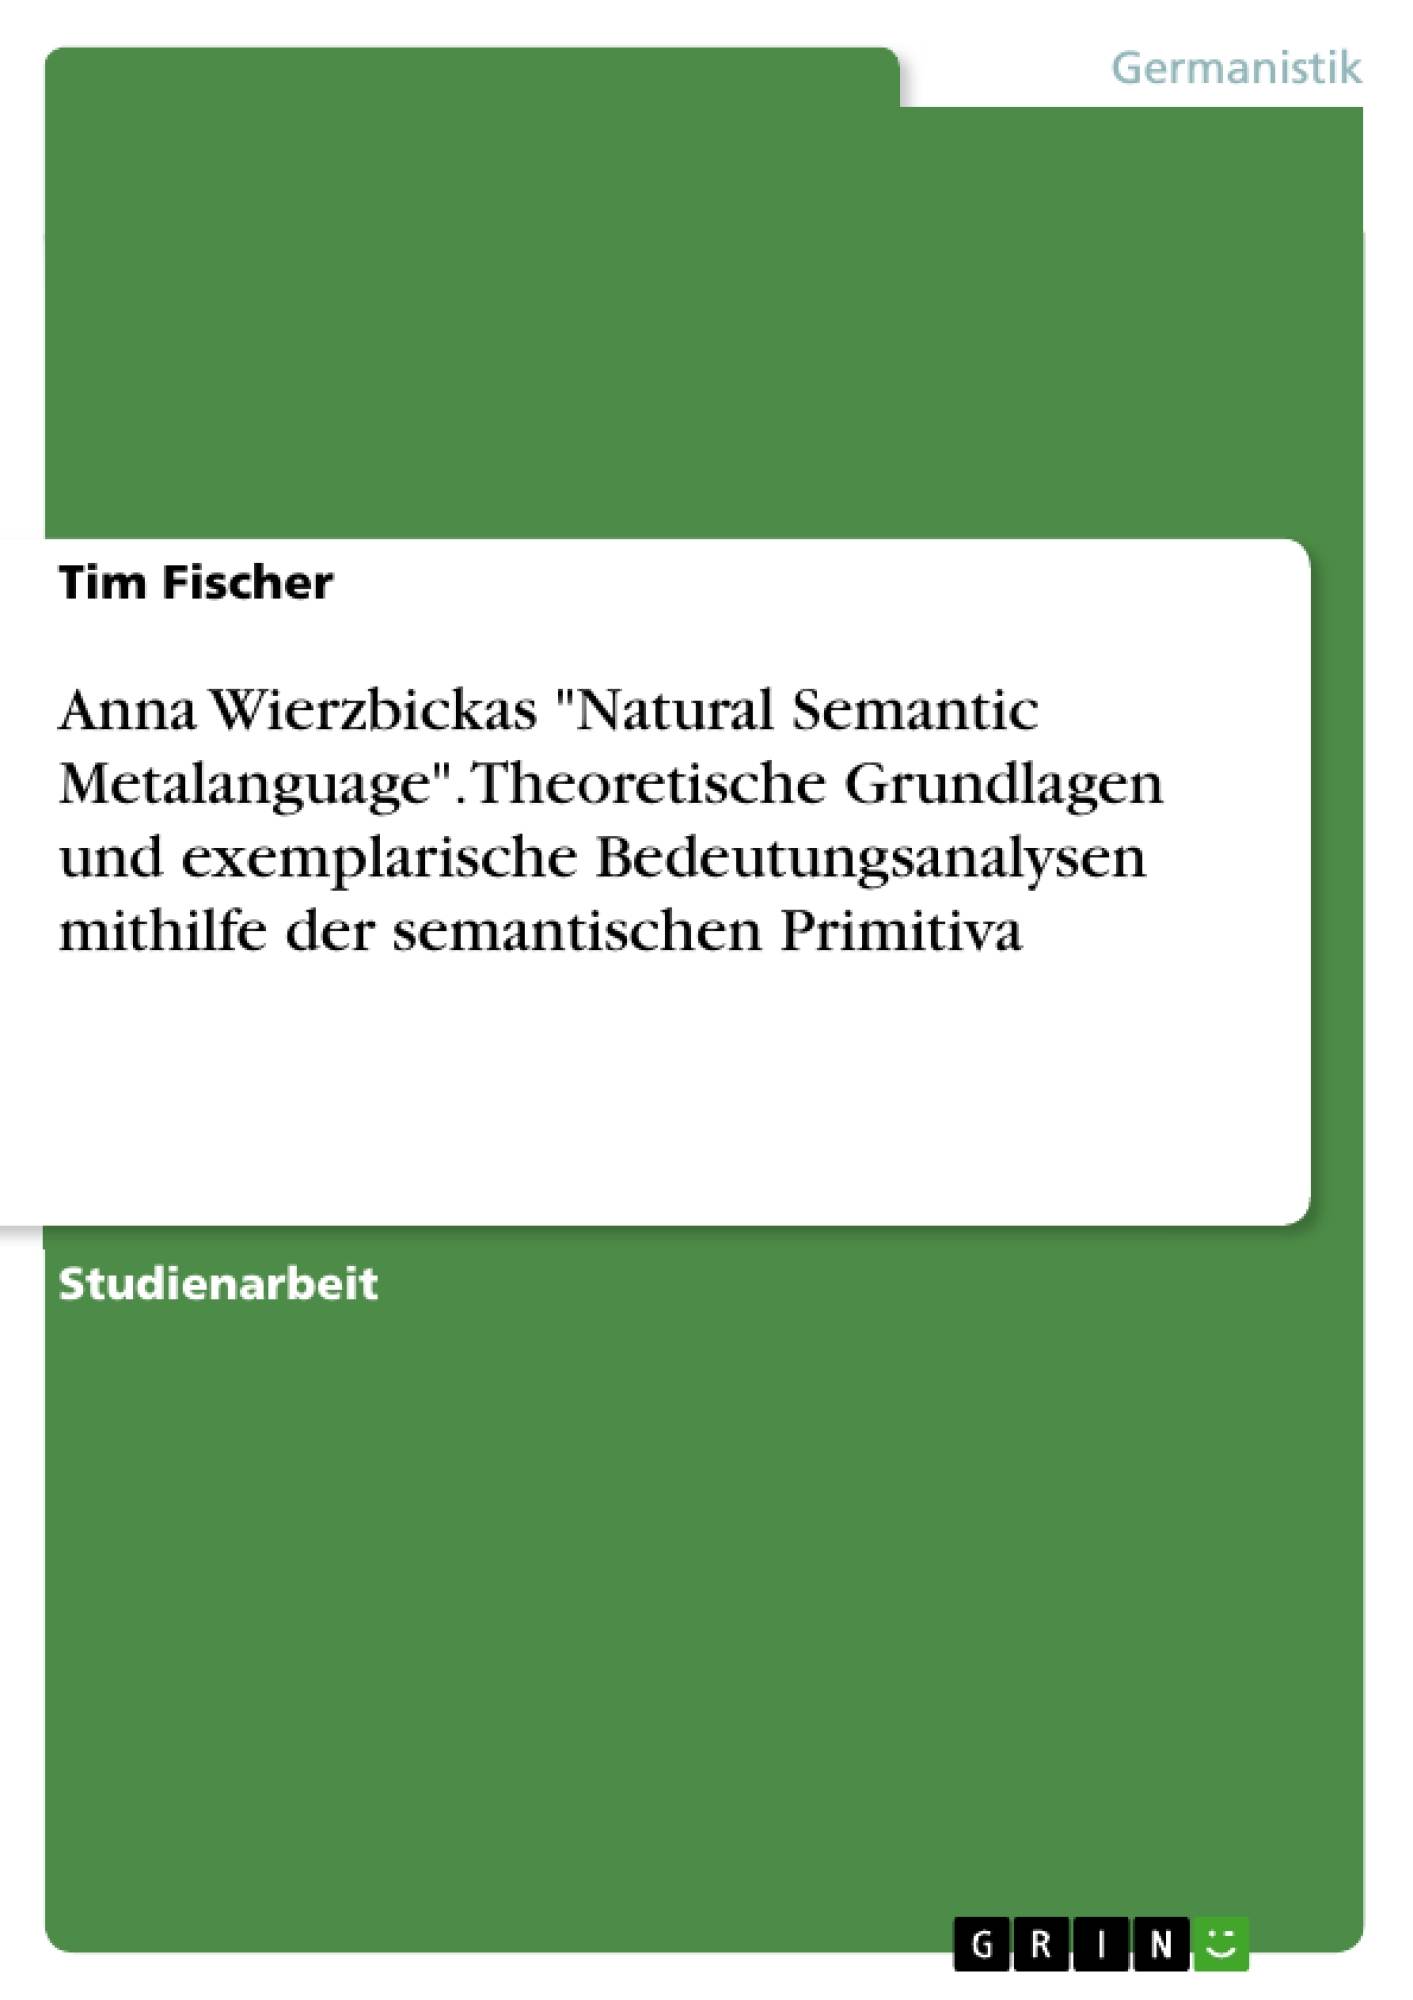 Anna Wierzbickas "Natural Semantic Metalanguage". Theoretische Grundlagen und exemplarische Bedeutungsanalysen mithilfe der semantischen Primitiva (German Edition)